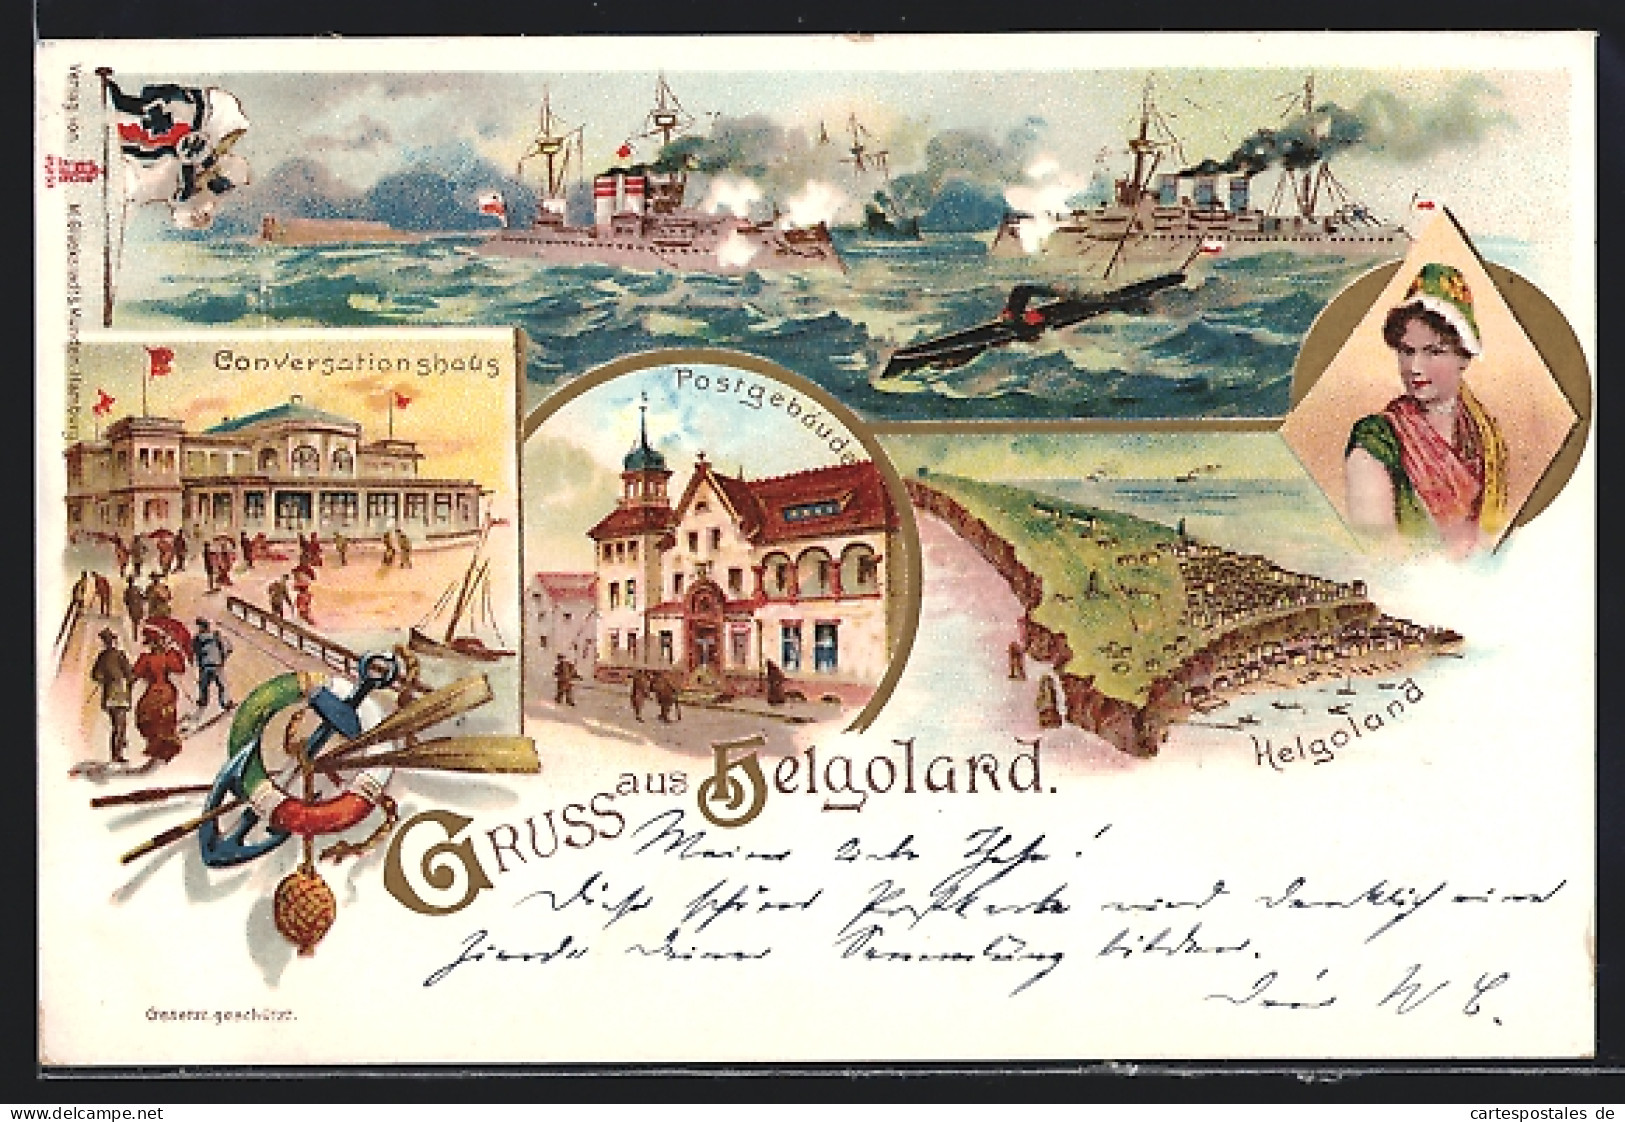 Lithographie Helgoland, Kriegsschiffe Unter Volldampf, Conversationshaus, Postgebäude, Helgoländerin In Tracht  - Helgoland